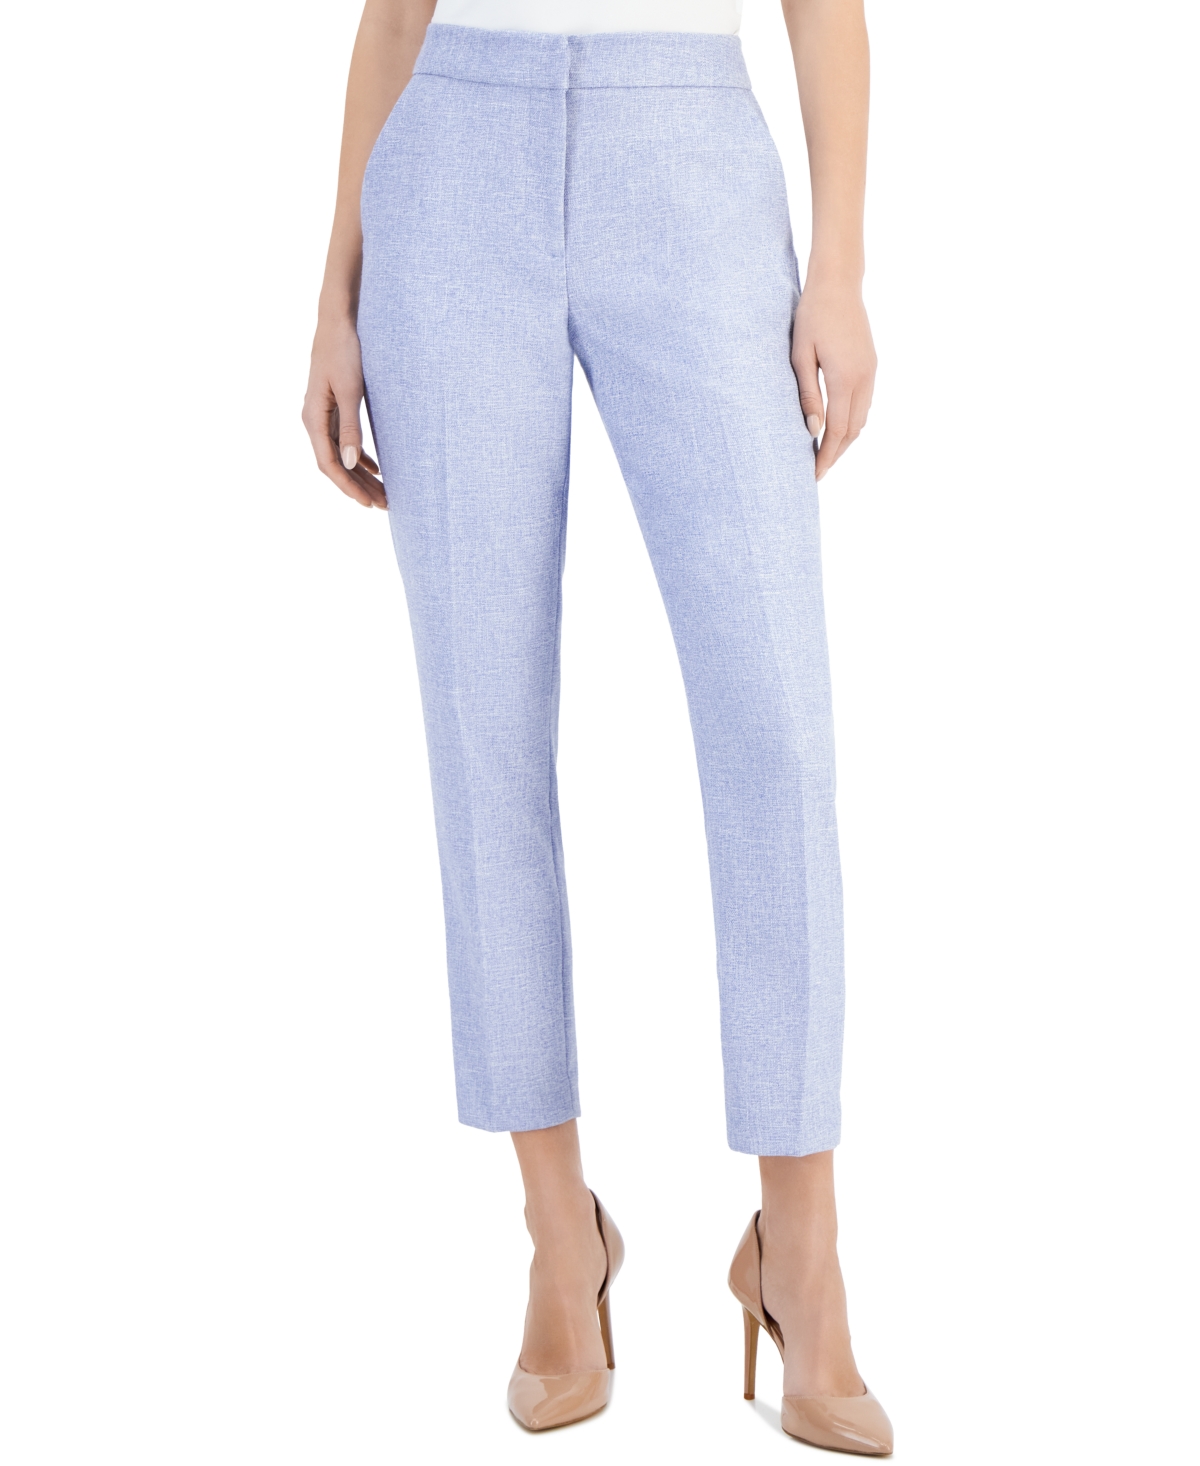 Women's Slim-Fit Side-Pocket Woven Ankle Pants - Water Garden Blue